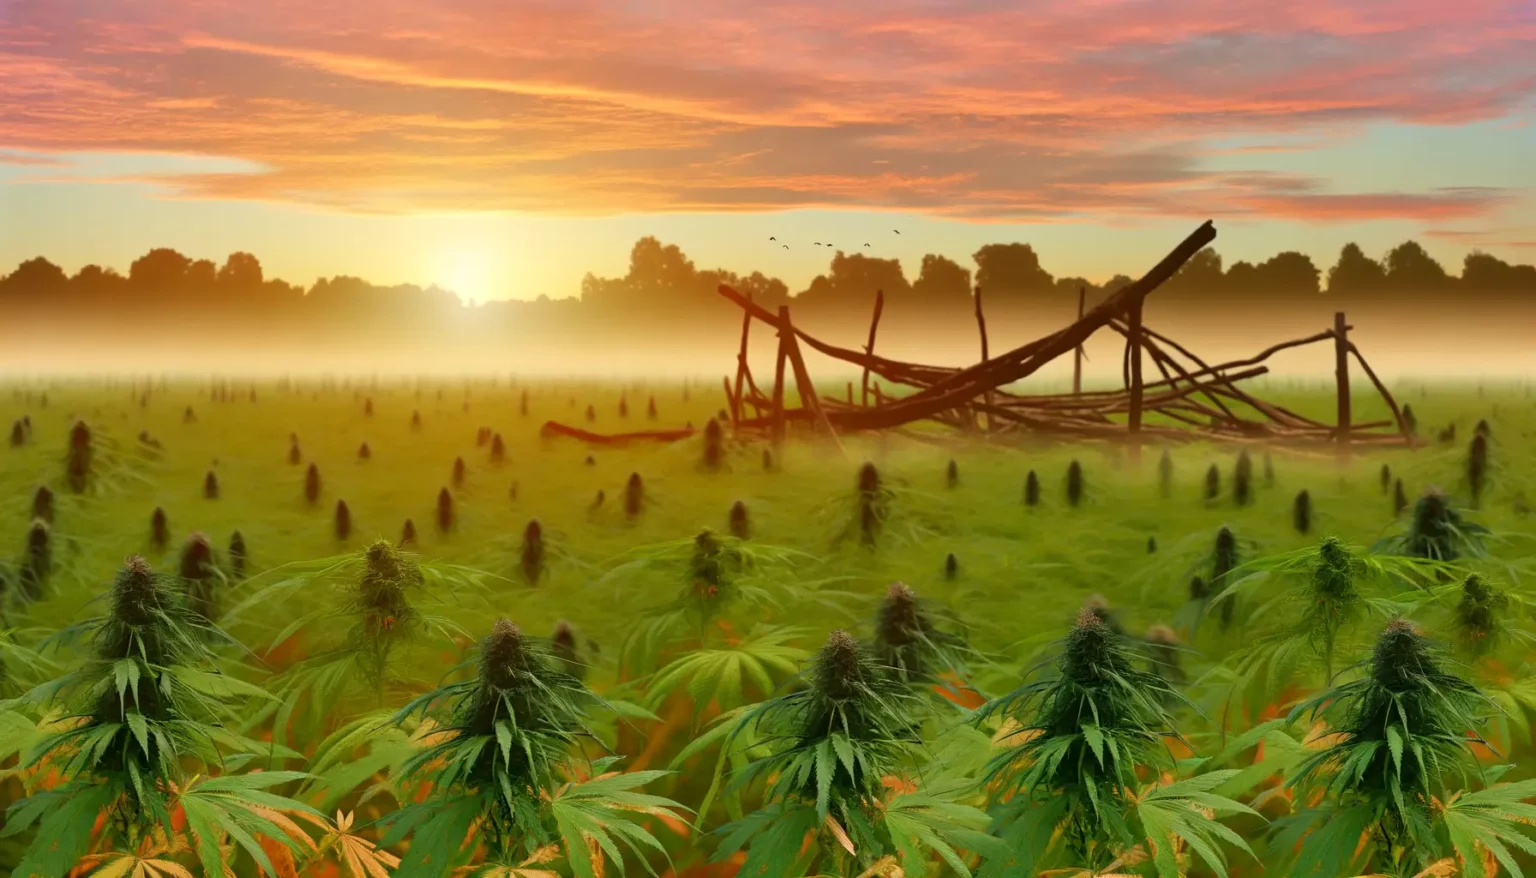 Ein idyllisches Feld mit Cannabis-Pflanzen im Vordergrund, verwitterte Holzzäune und Überreste einer Struktur sind im Mittelgrund sichtbar; im Hintergrund erheben sich Bäume vor einem leuchtend rot-orange gefärbten Himmel durch den aufgehenden Sonnenschein, während Nebelschwaden über dem Boden schweben.